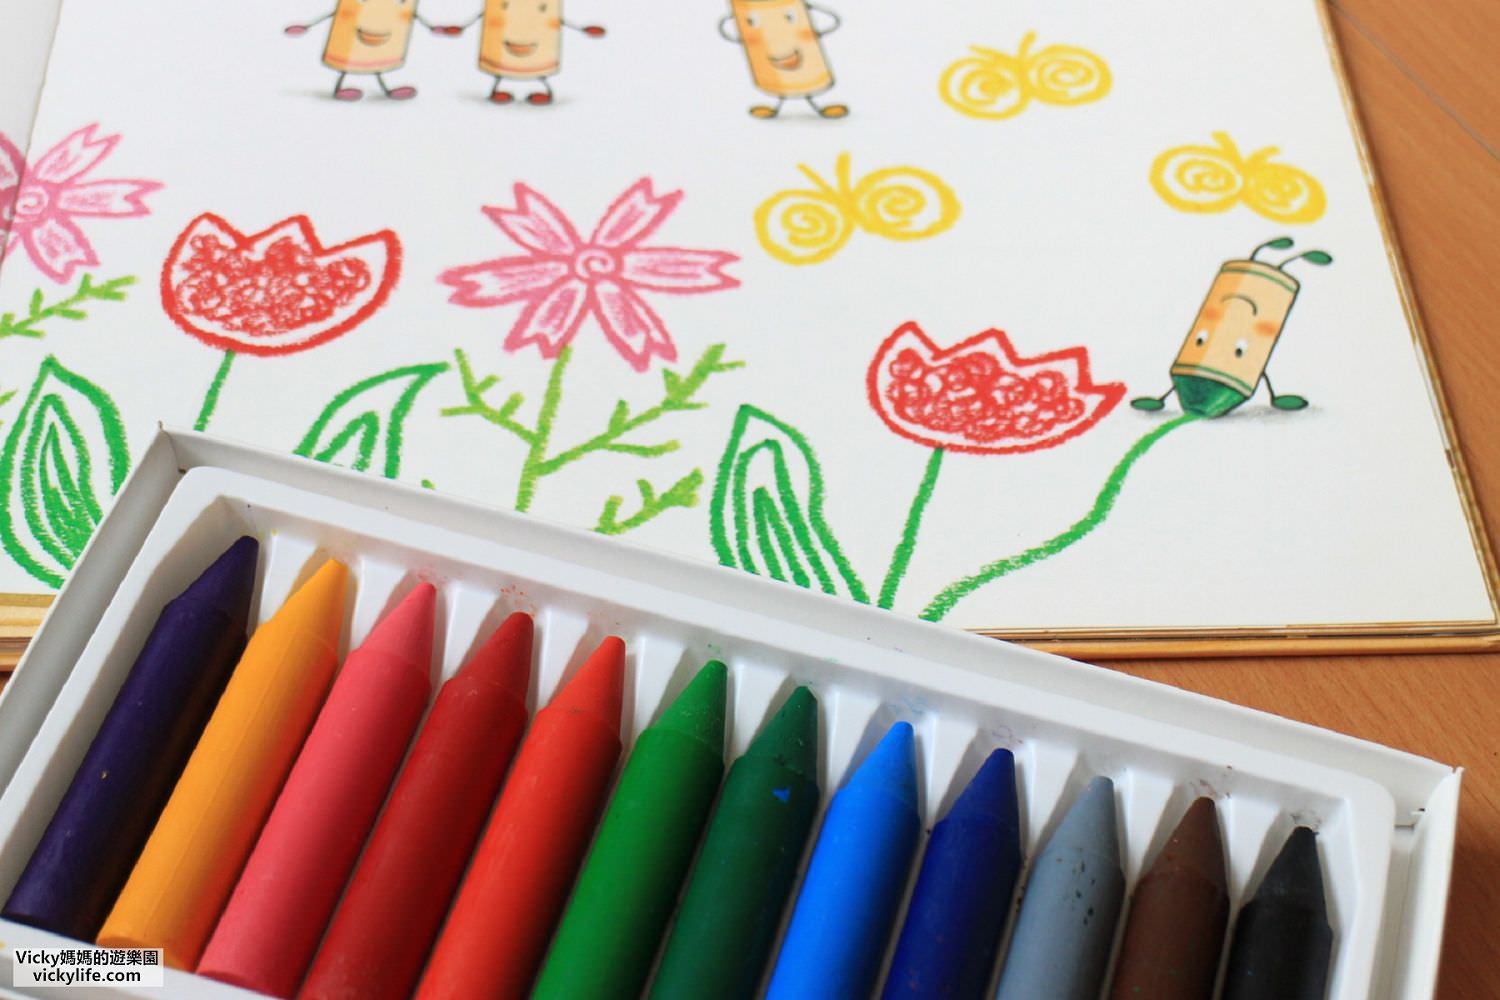 兒童用品︱無毒大豆蠟筆kidzcrayon，任意撕貼壁貼，讓孩子恣意揮灑想像